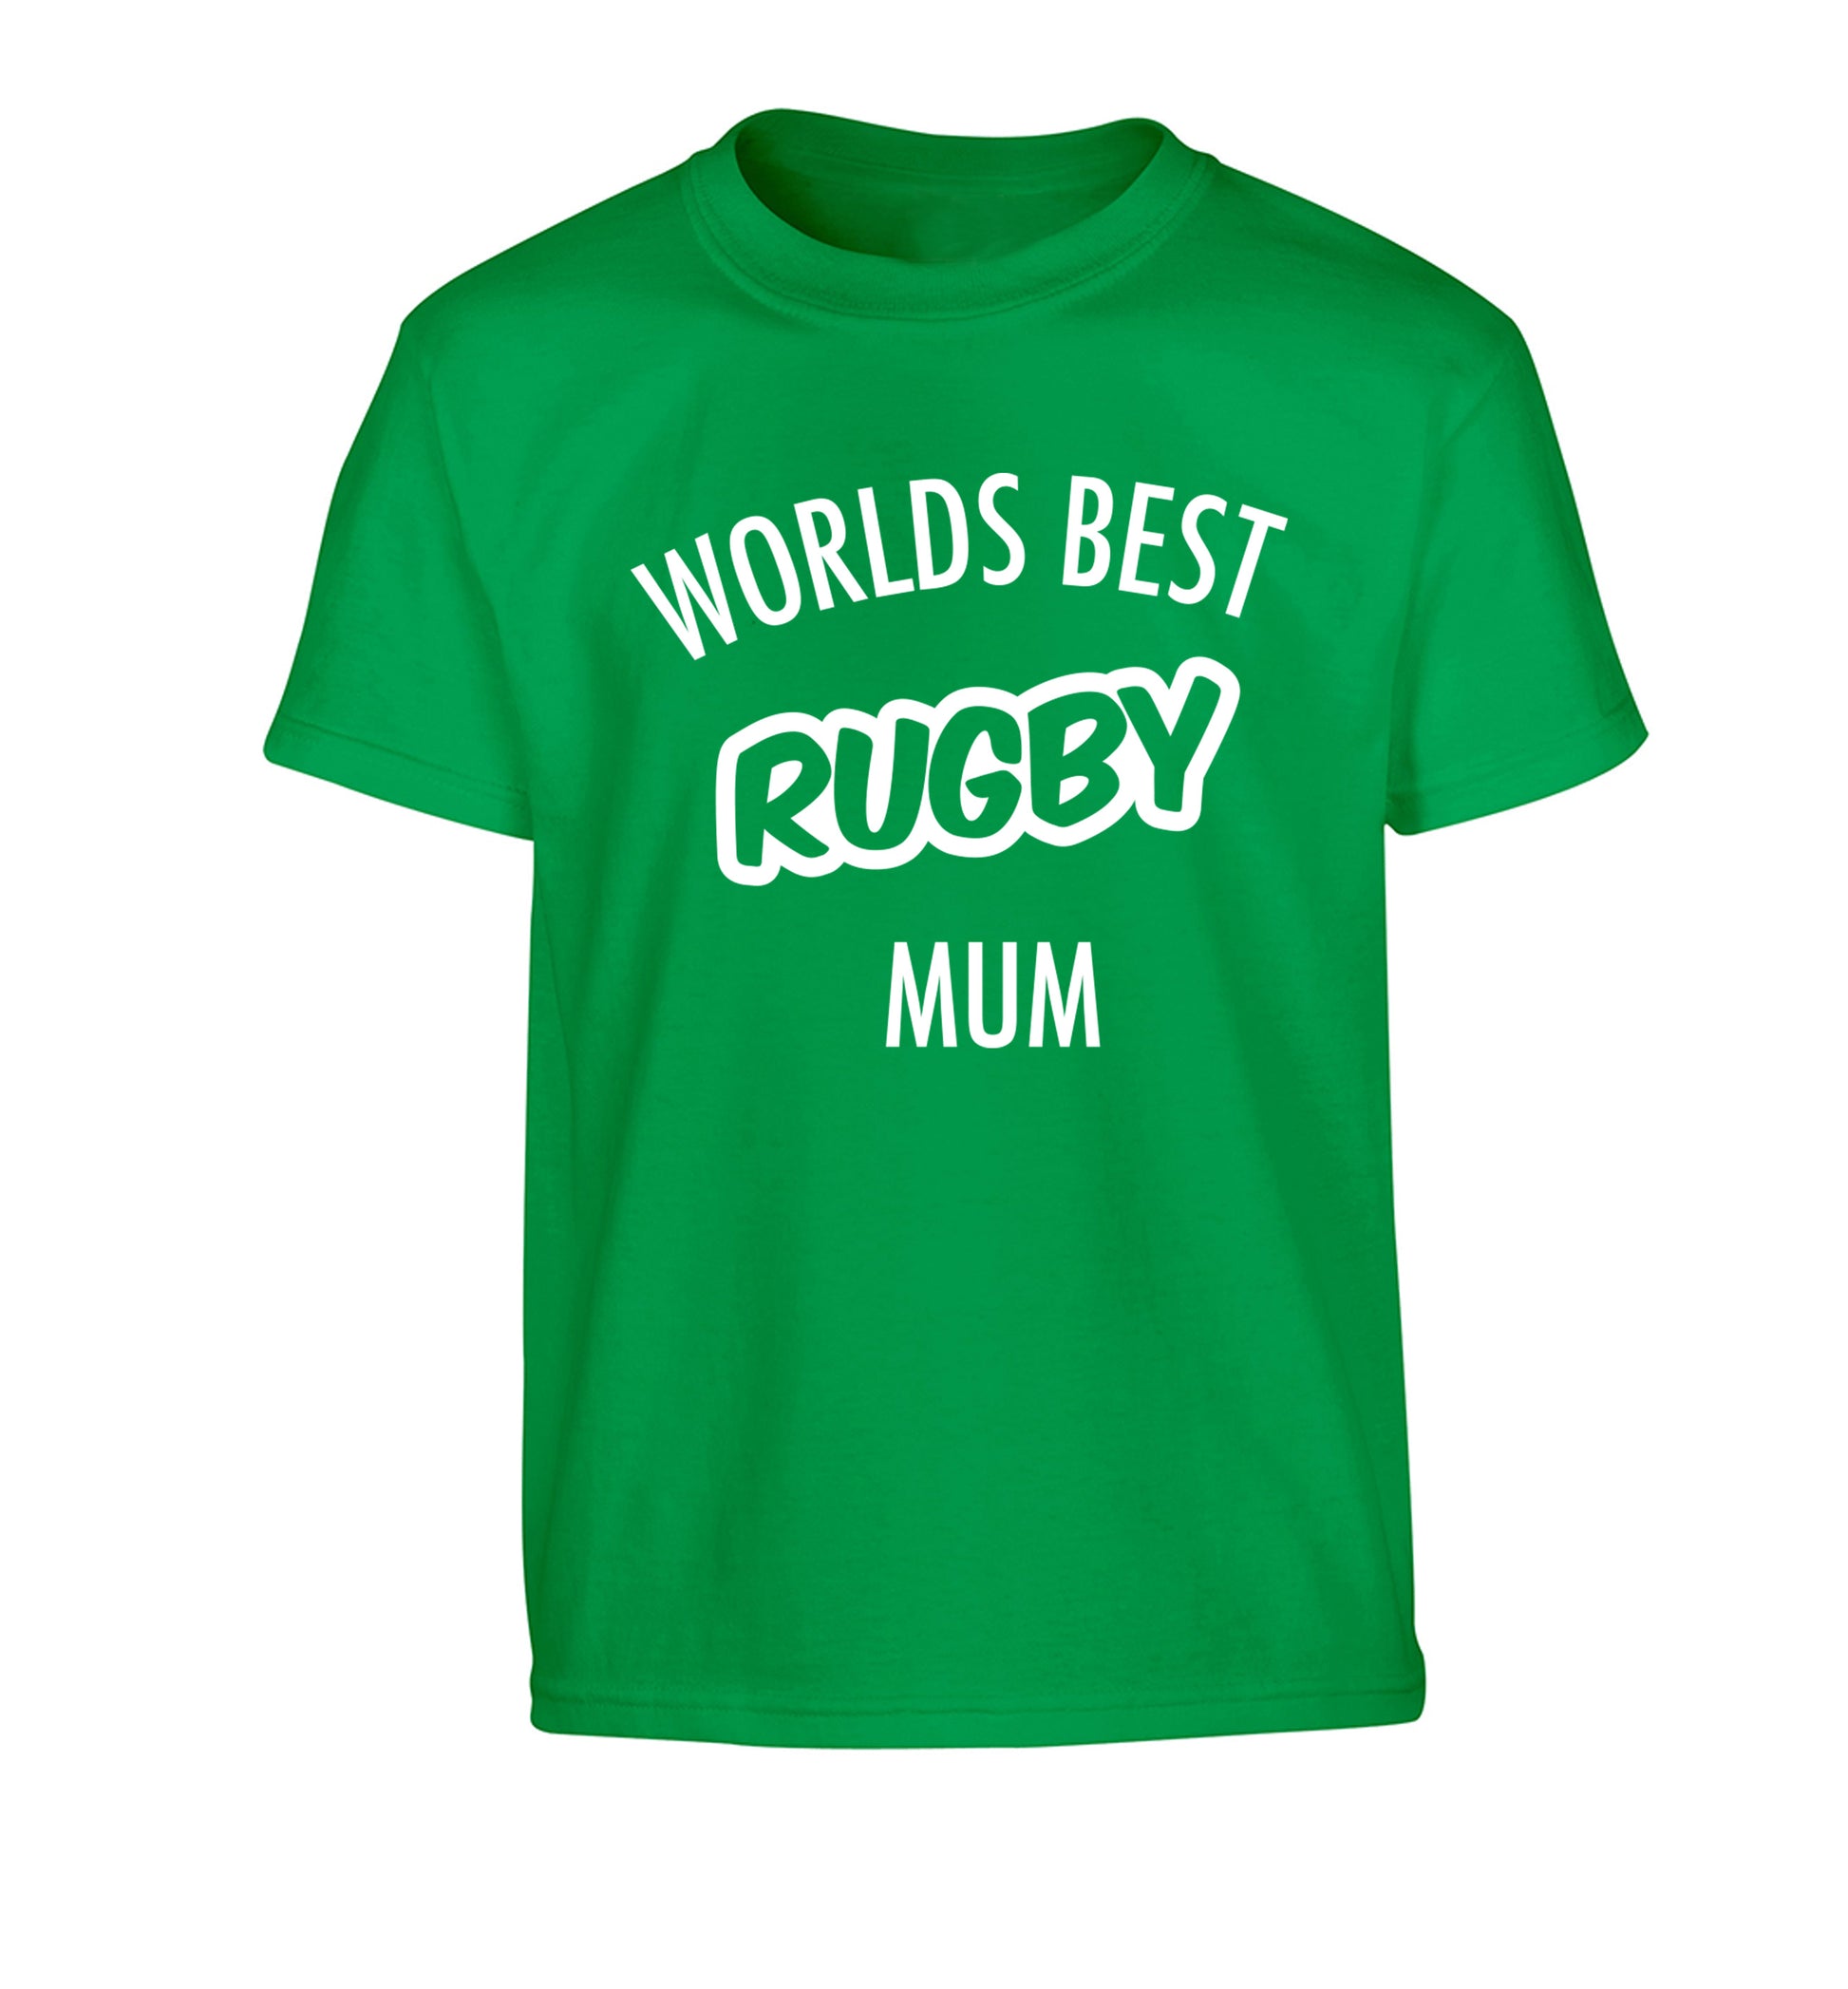 Worlds best rugby mum Children's green Tshirt 12-13 Years